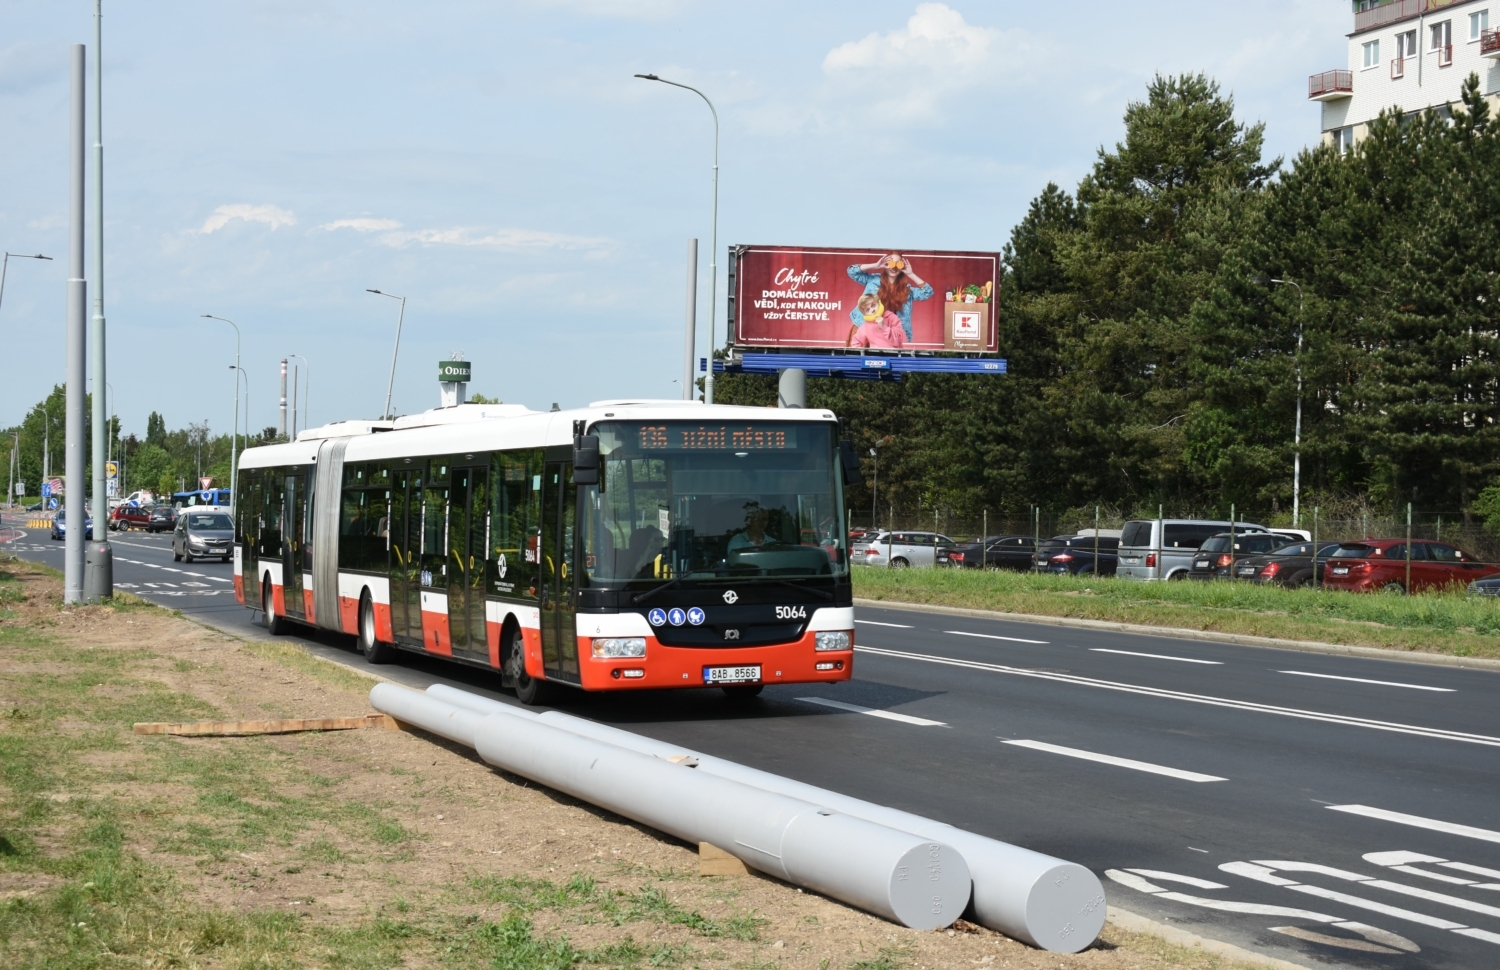 Autobus SOR NB 18 CITY linky číslo 136 projíždí kolem sloupů budoucí první pražské trolejbusové linky č. 58 z Čakovic na Prosek. Pokud by došlo k elektrifikaci linky číslo 136 (v kombinaci s linkou číslo 150), byl by nyní budovaný úsek pochopitelně využíván i linkou č. 136. (foto: Libor Hinčica)